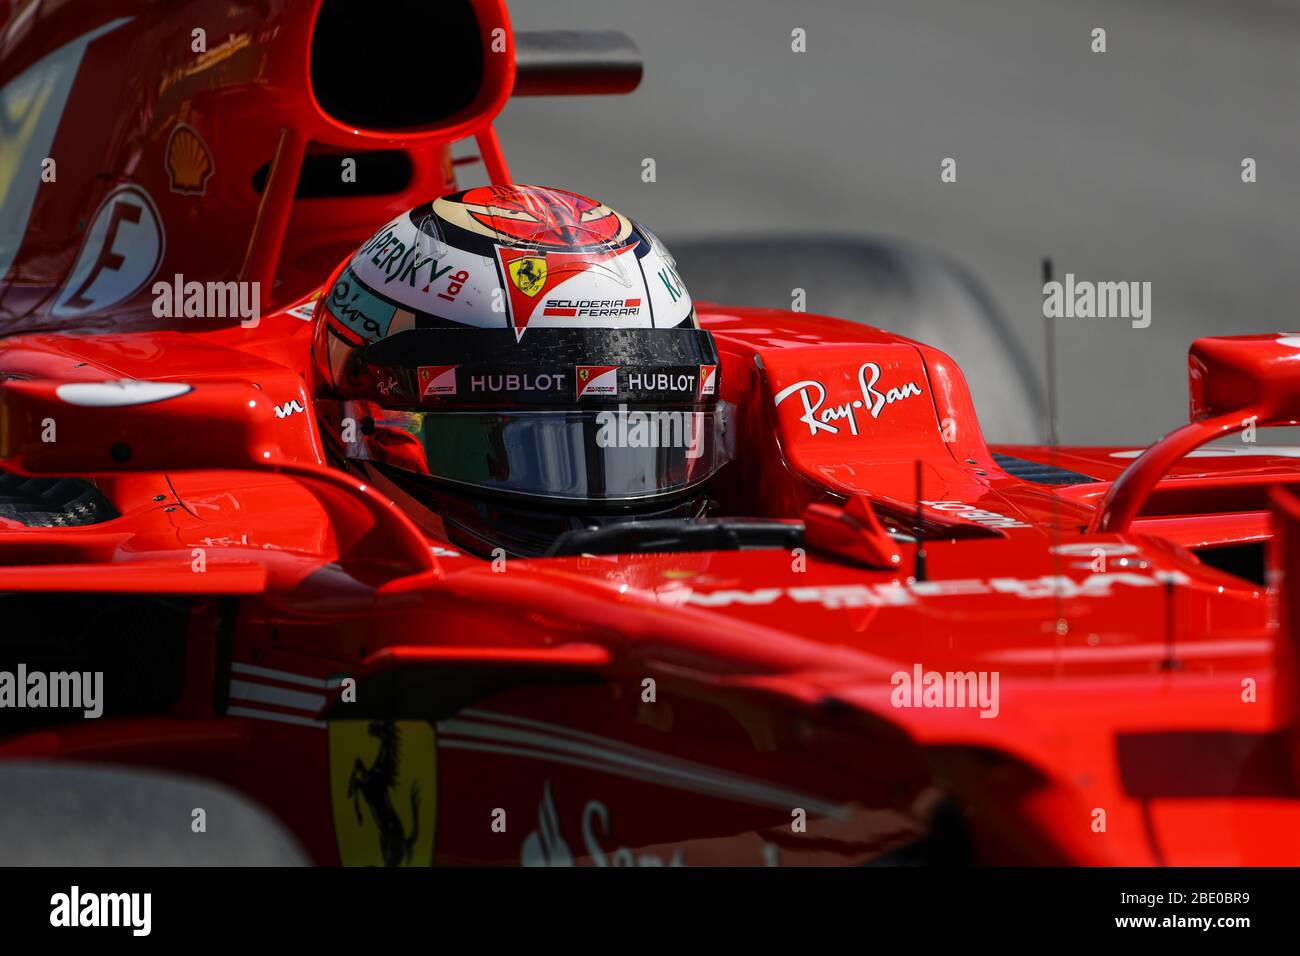 Kimi Raikkoen, Scuderia Ferrari, Ferrari SF70-H, 2017 Spanish GP, Circuit de Catalunya, Montmelò Stockfoto